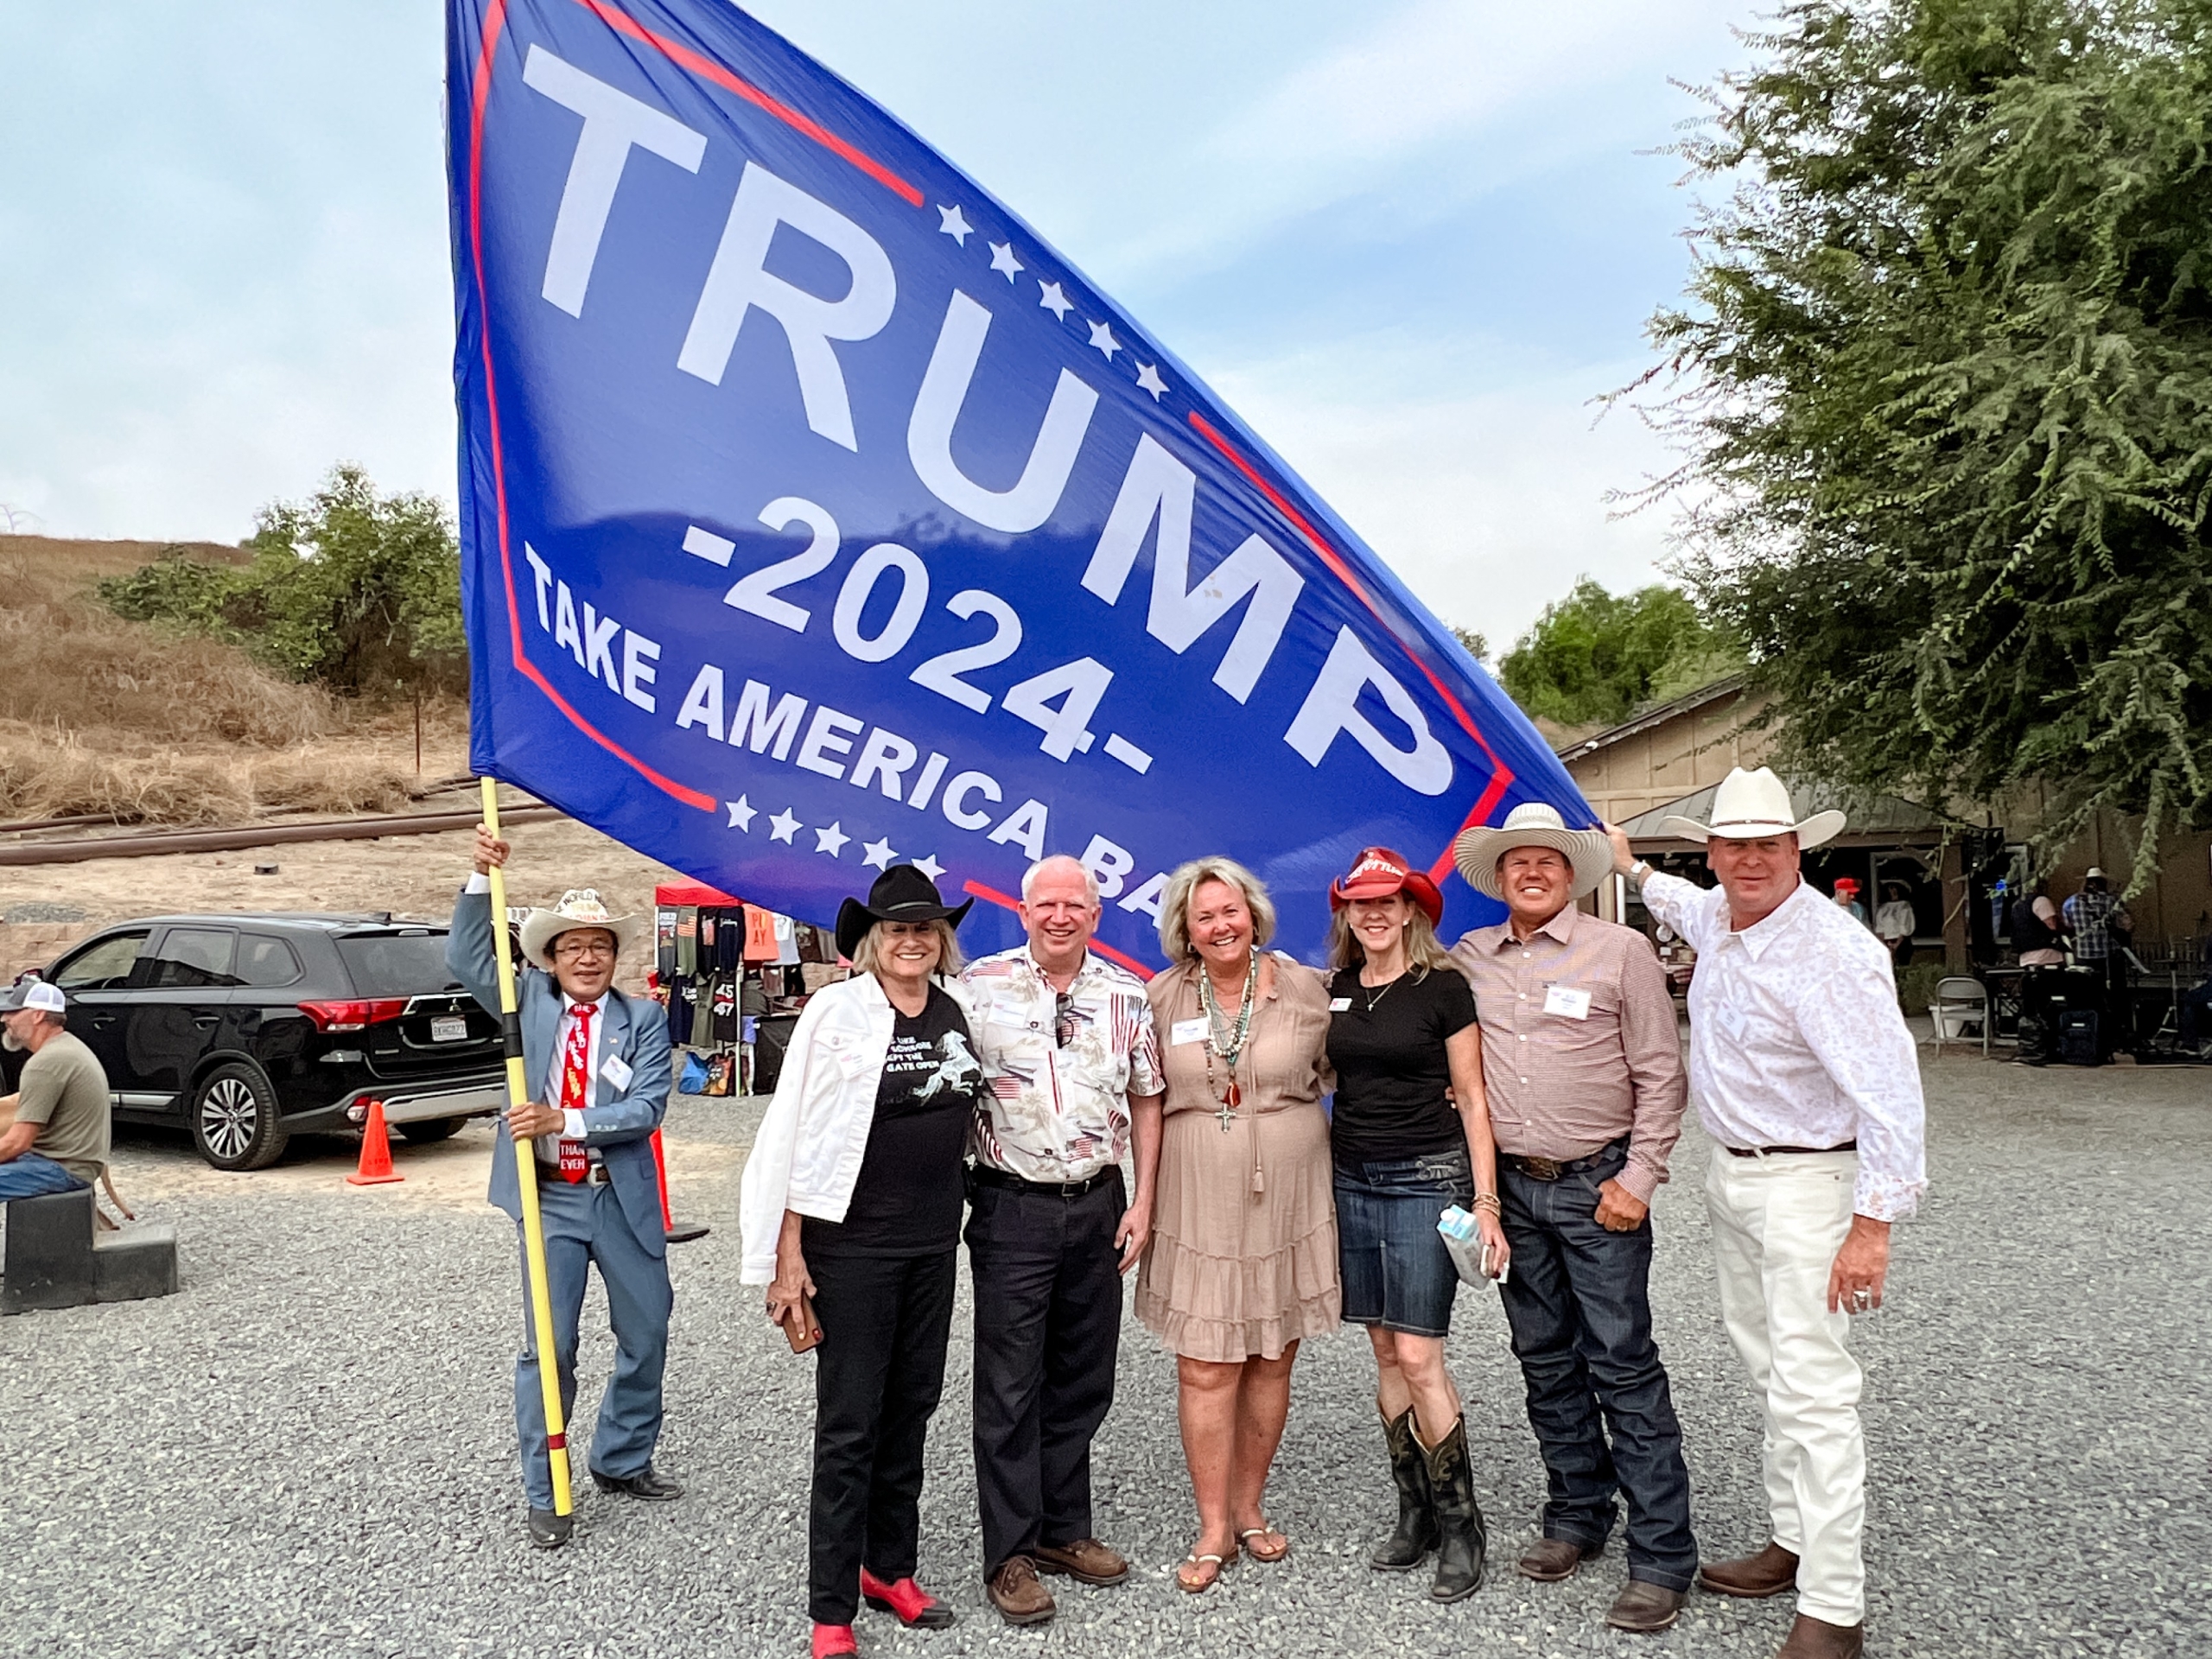 Ông John Eastman (thứ 3 từ trái sang) và những người ủng hộ ông chụp ảnh chung tại một sự kiện riêng tư được tổ chức tại một trang trại ở phía bắc Quận Cam, California, vào ngày 19/08/2023. (Ảnh: Brad Jones/The Epoch Times)